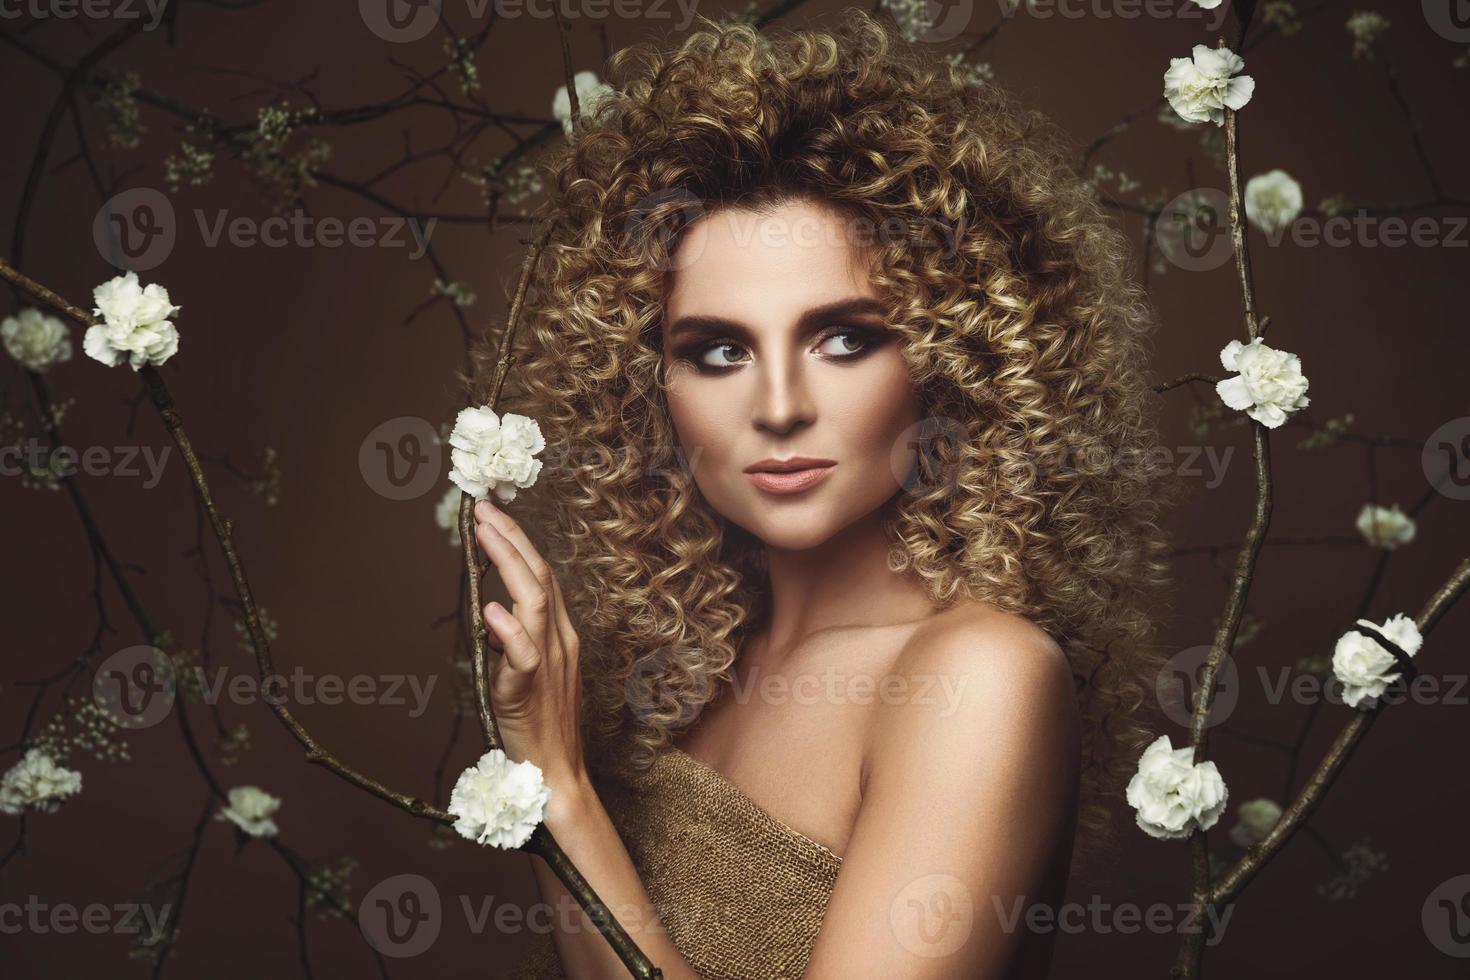 encantadora mujer joven con peinado afro y hermoso maquillaje con muchas flores blancas foto